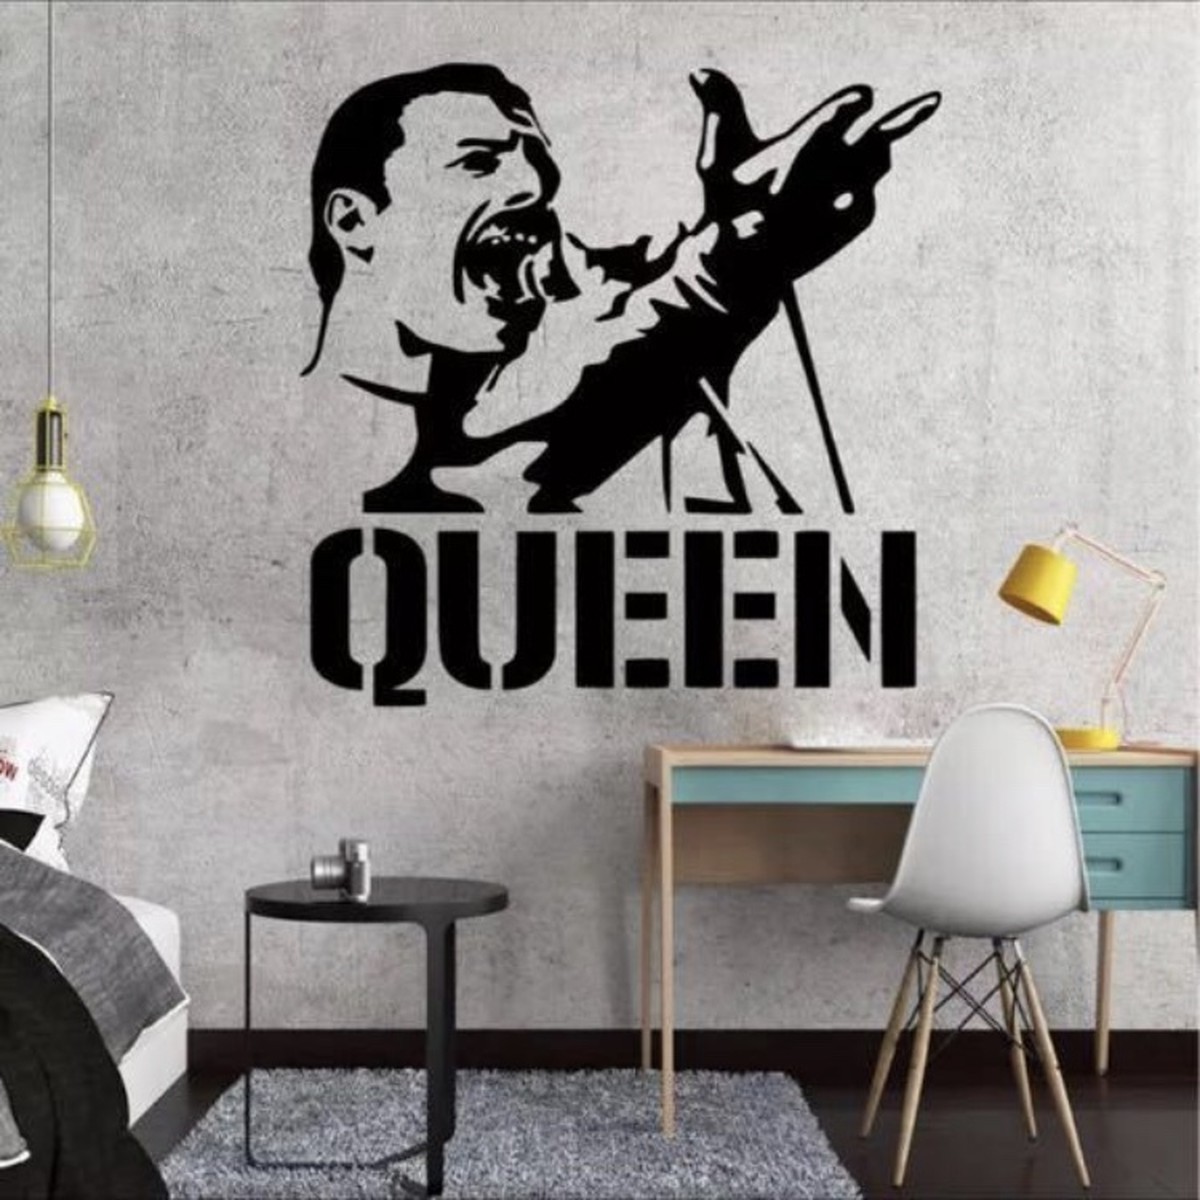 Queen ウォールステッカー Wall Sticker クイーン Freddie Mercury フレディマーキュリー Bf Merch S